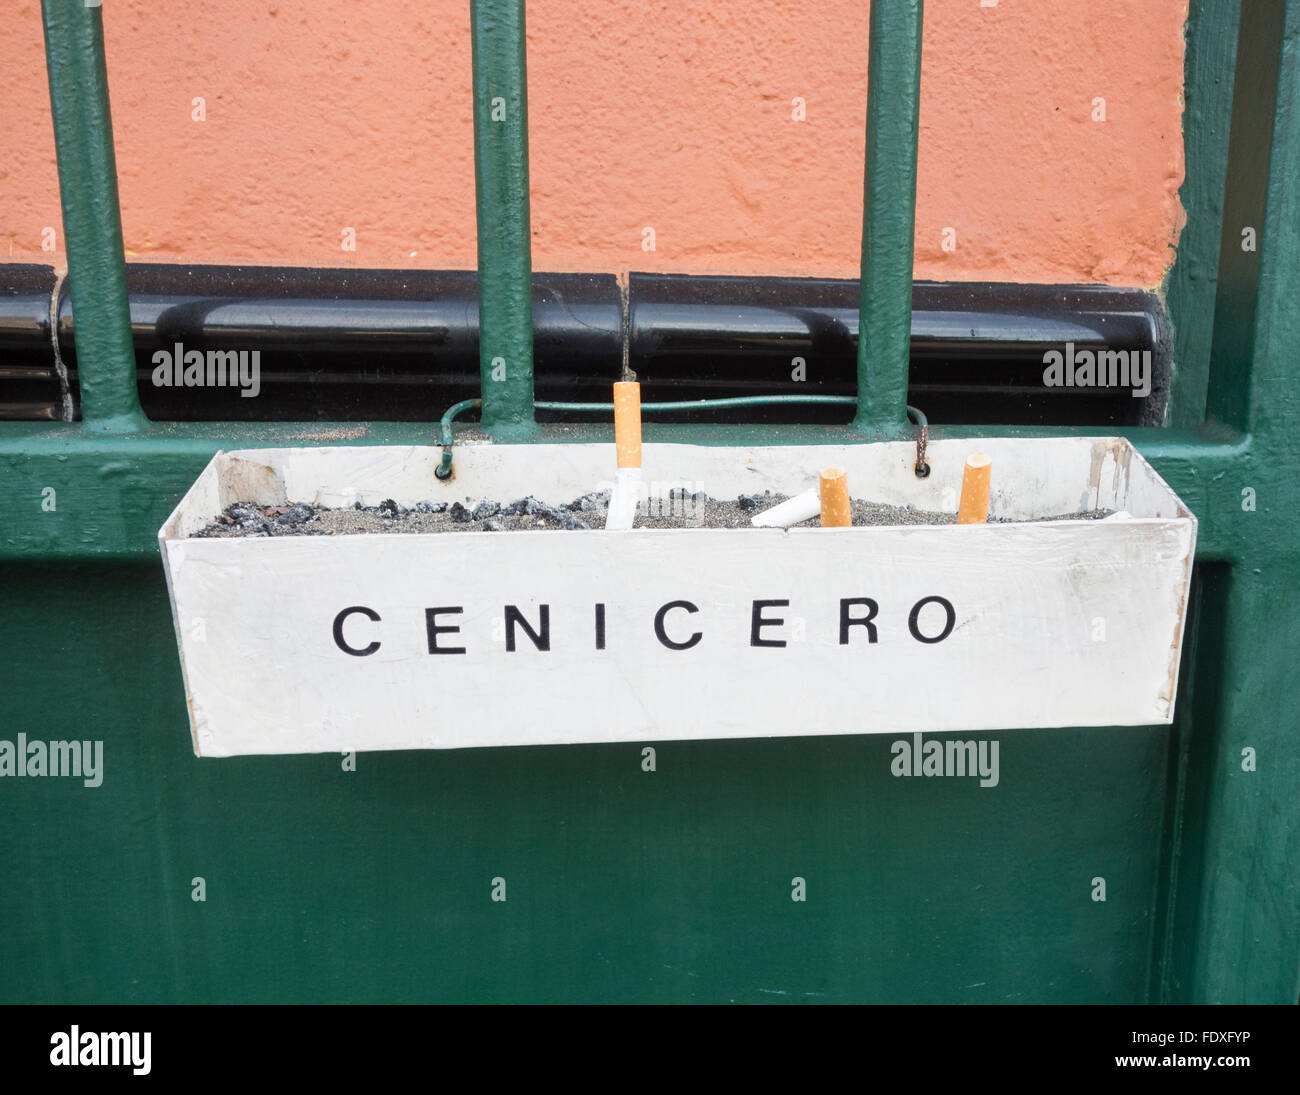 Cenicero cenicero (en inglés) bar exterior en España Fotografía de stock -  Alamy